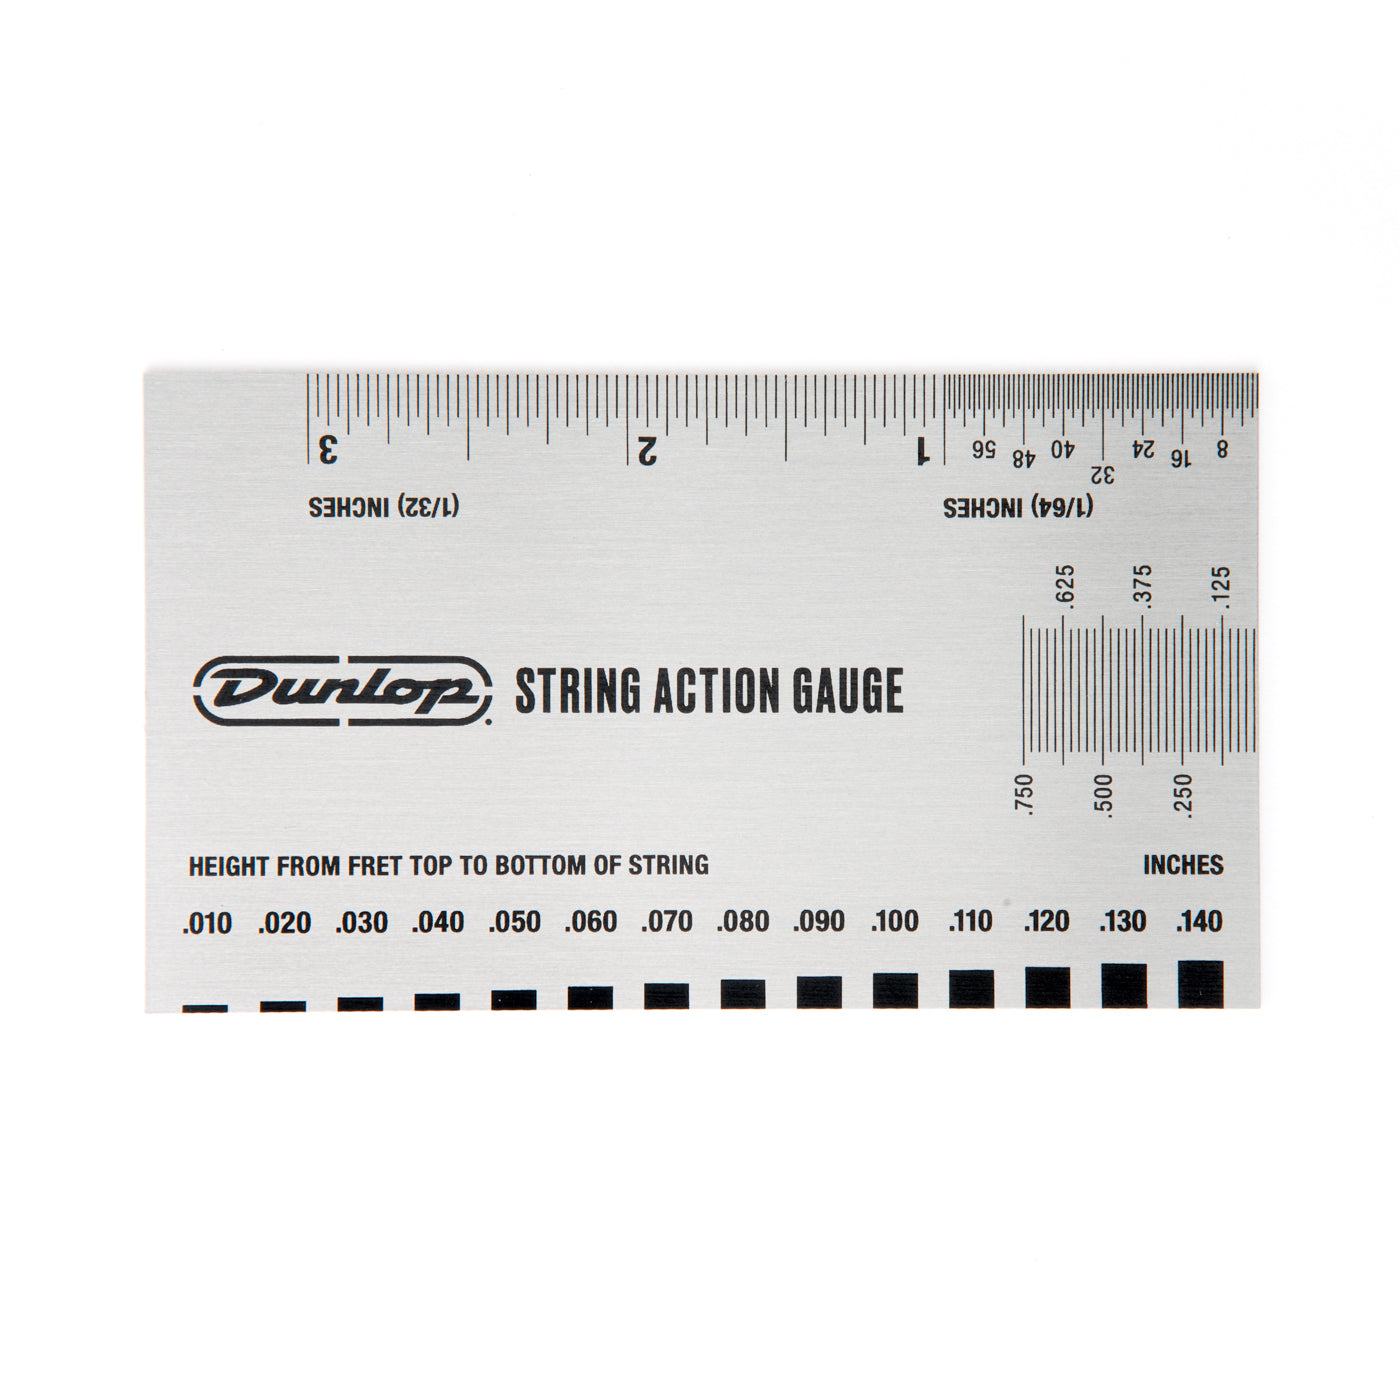 Dunlop System 65 String Action Gauge